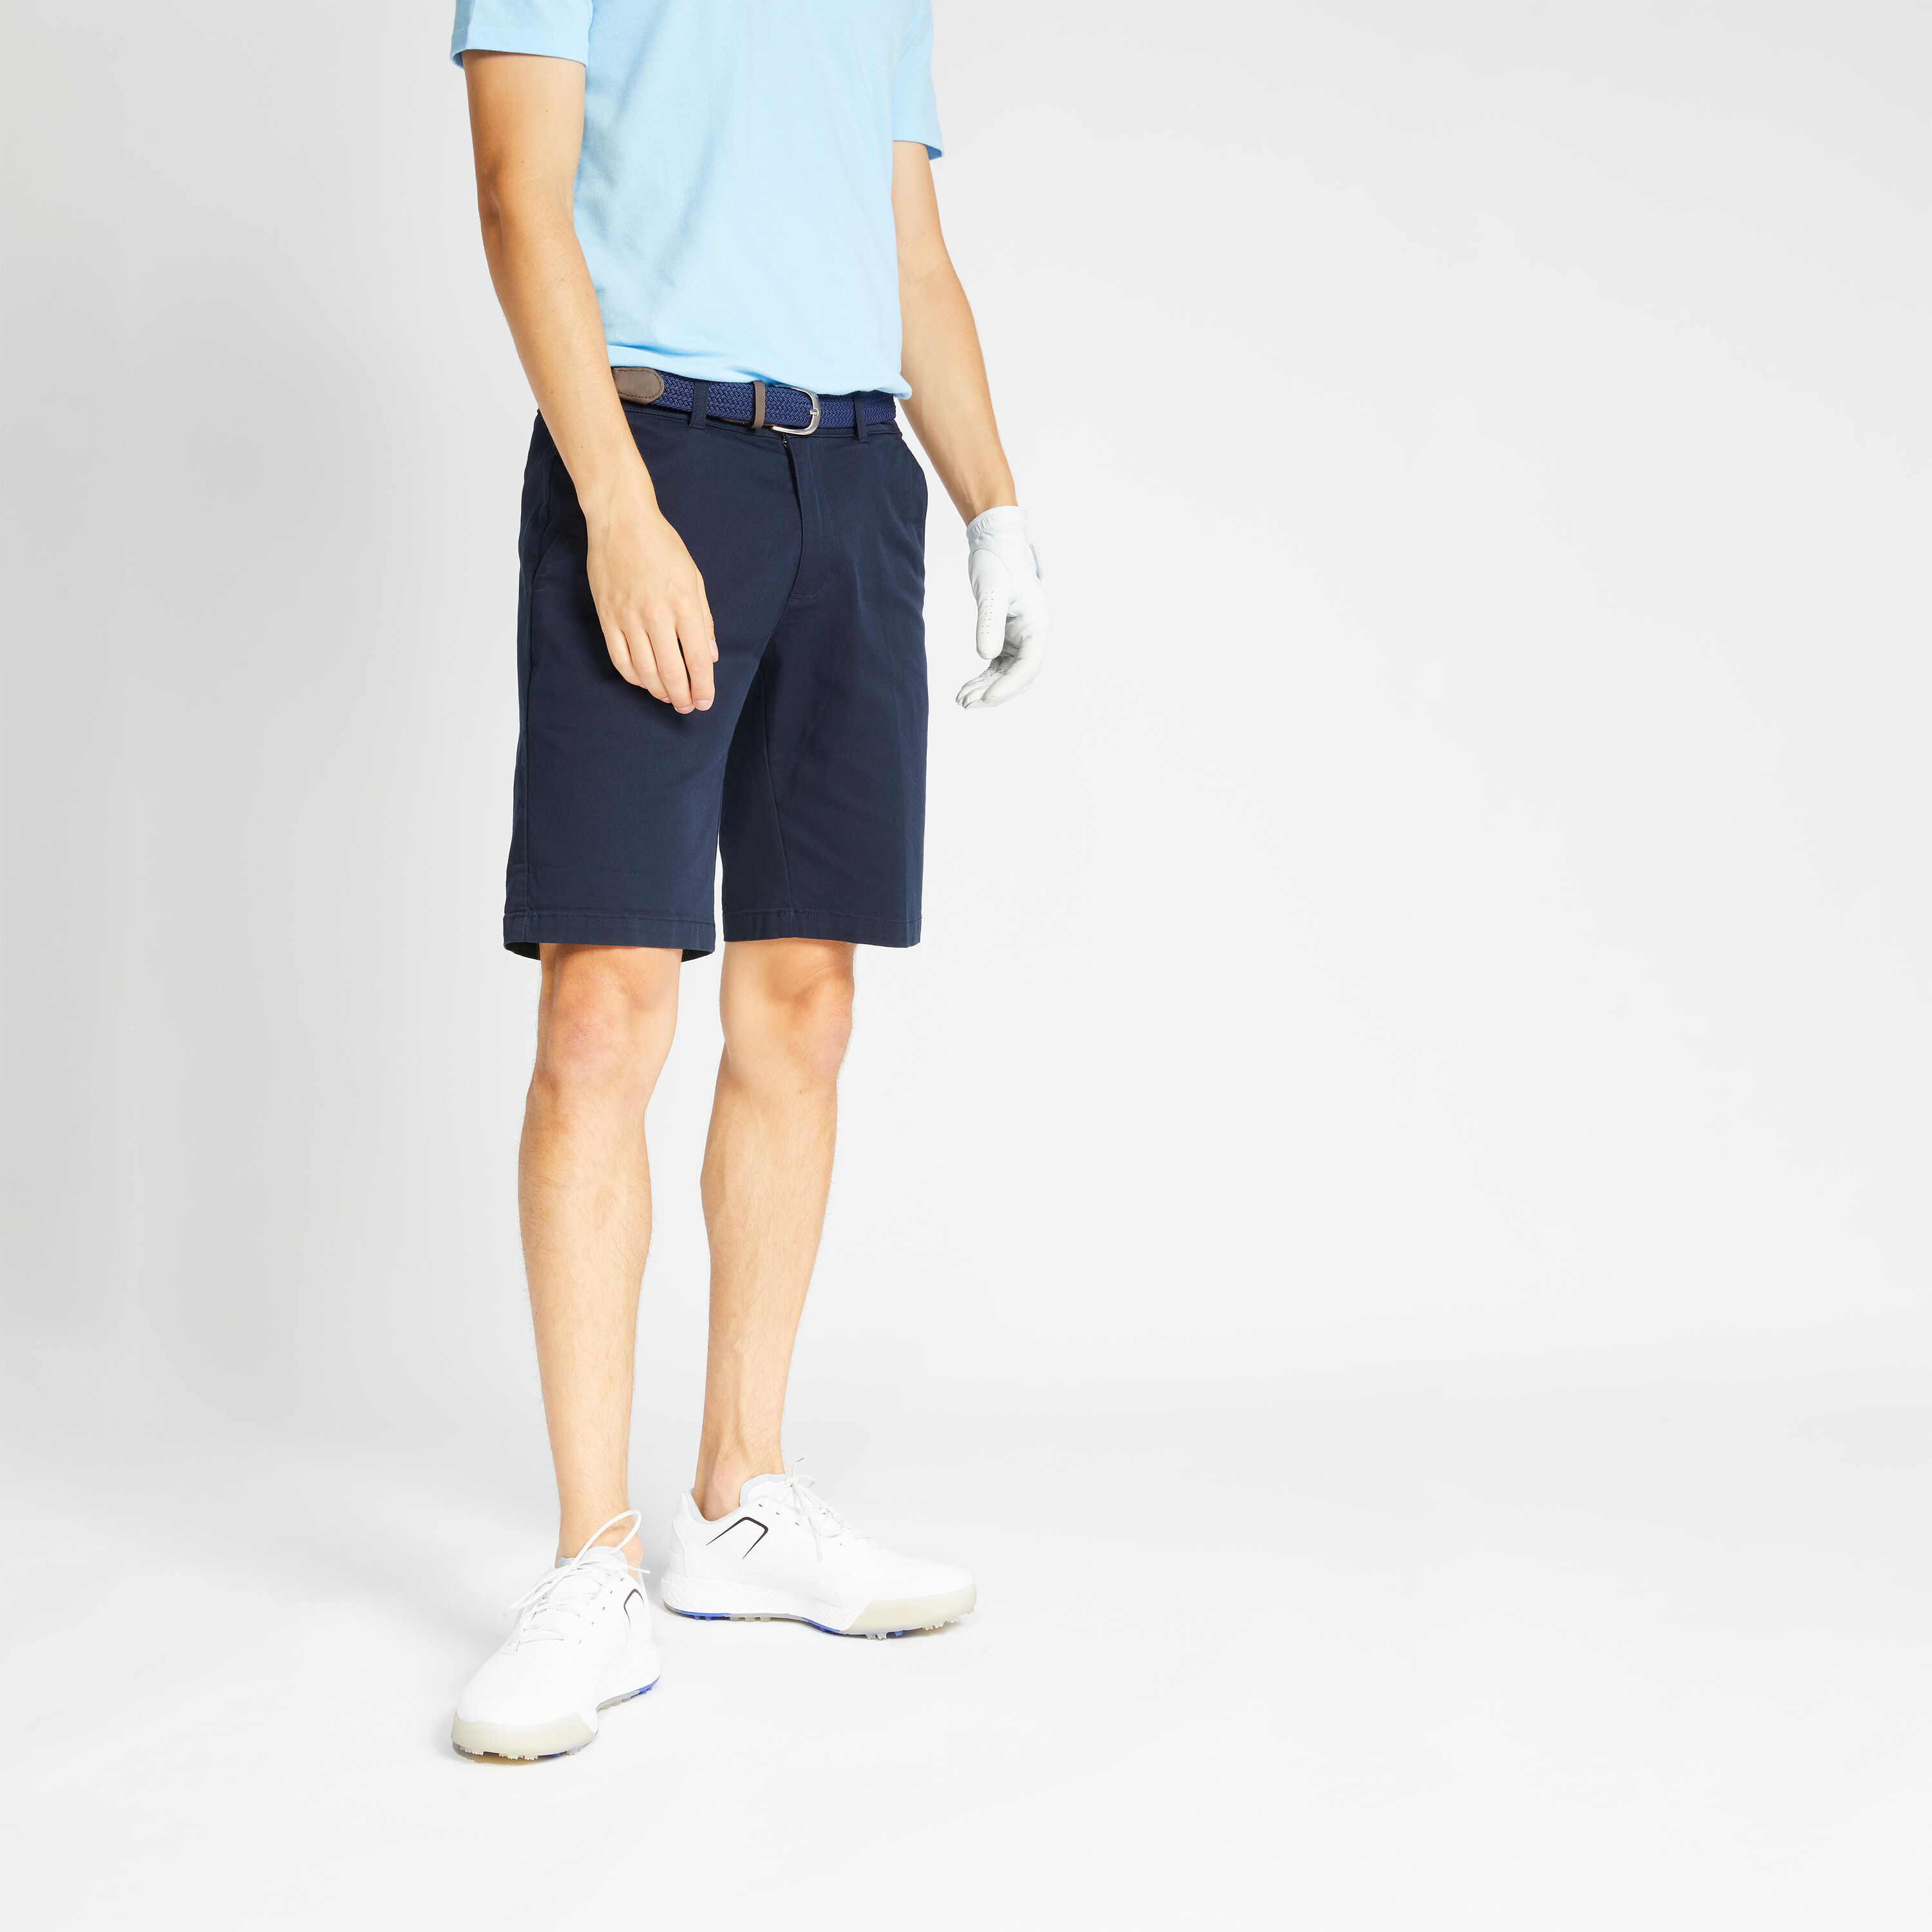 INESIS Men's Chino Golf Shorts - MW500 navy blue